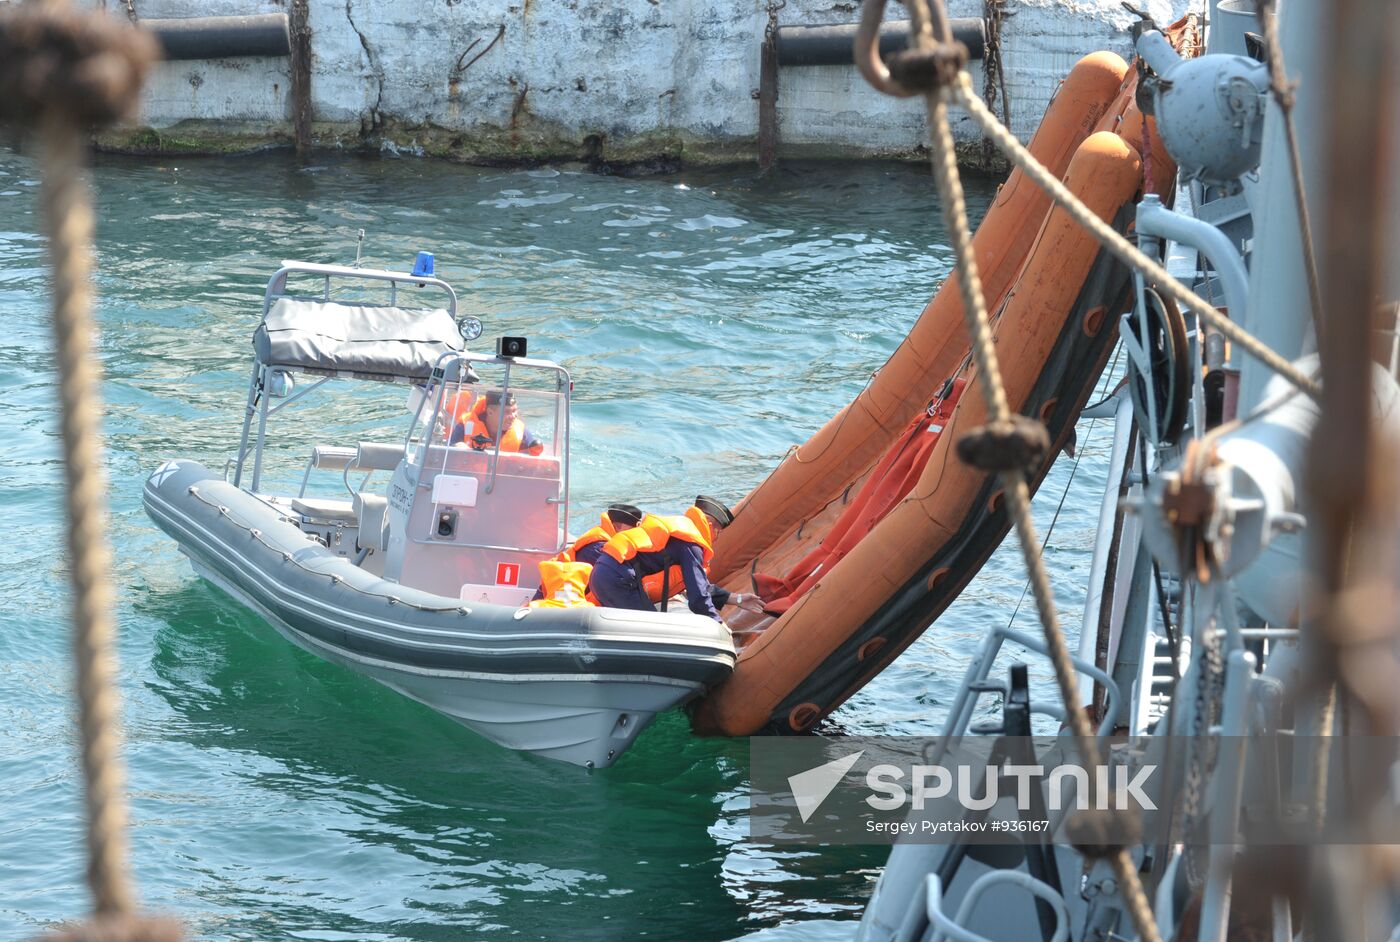 Black Sea fleet drills in Sevastopol